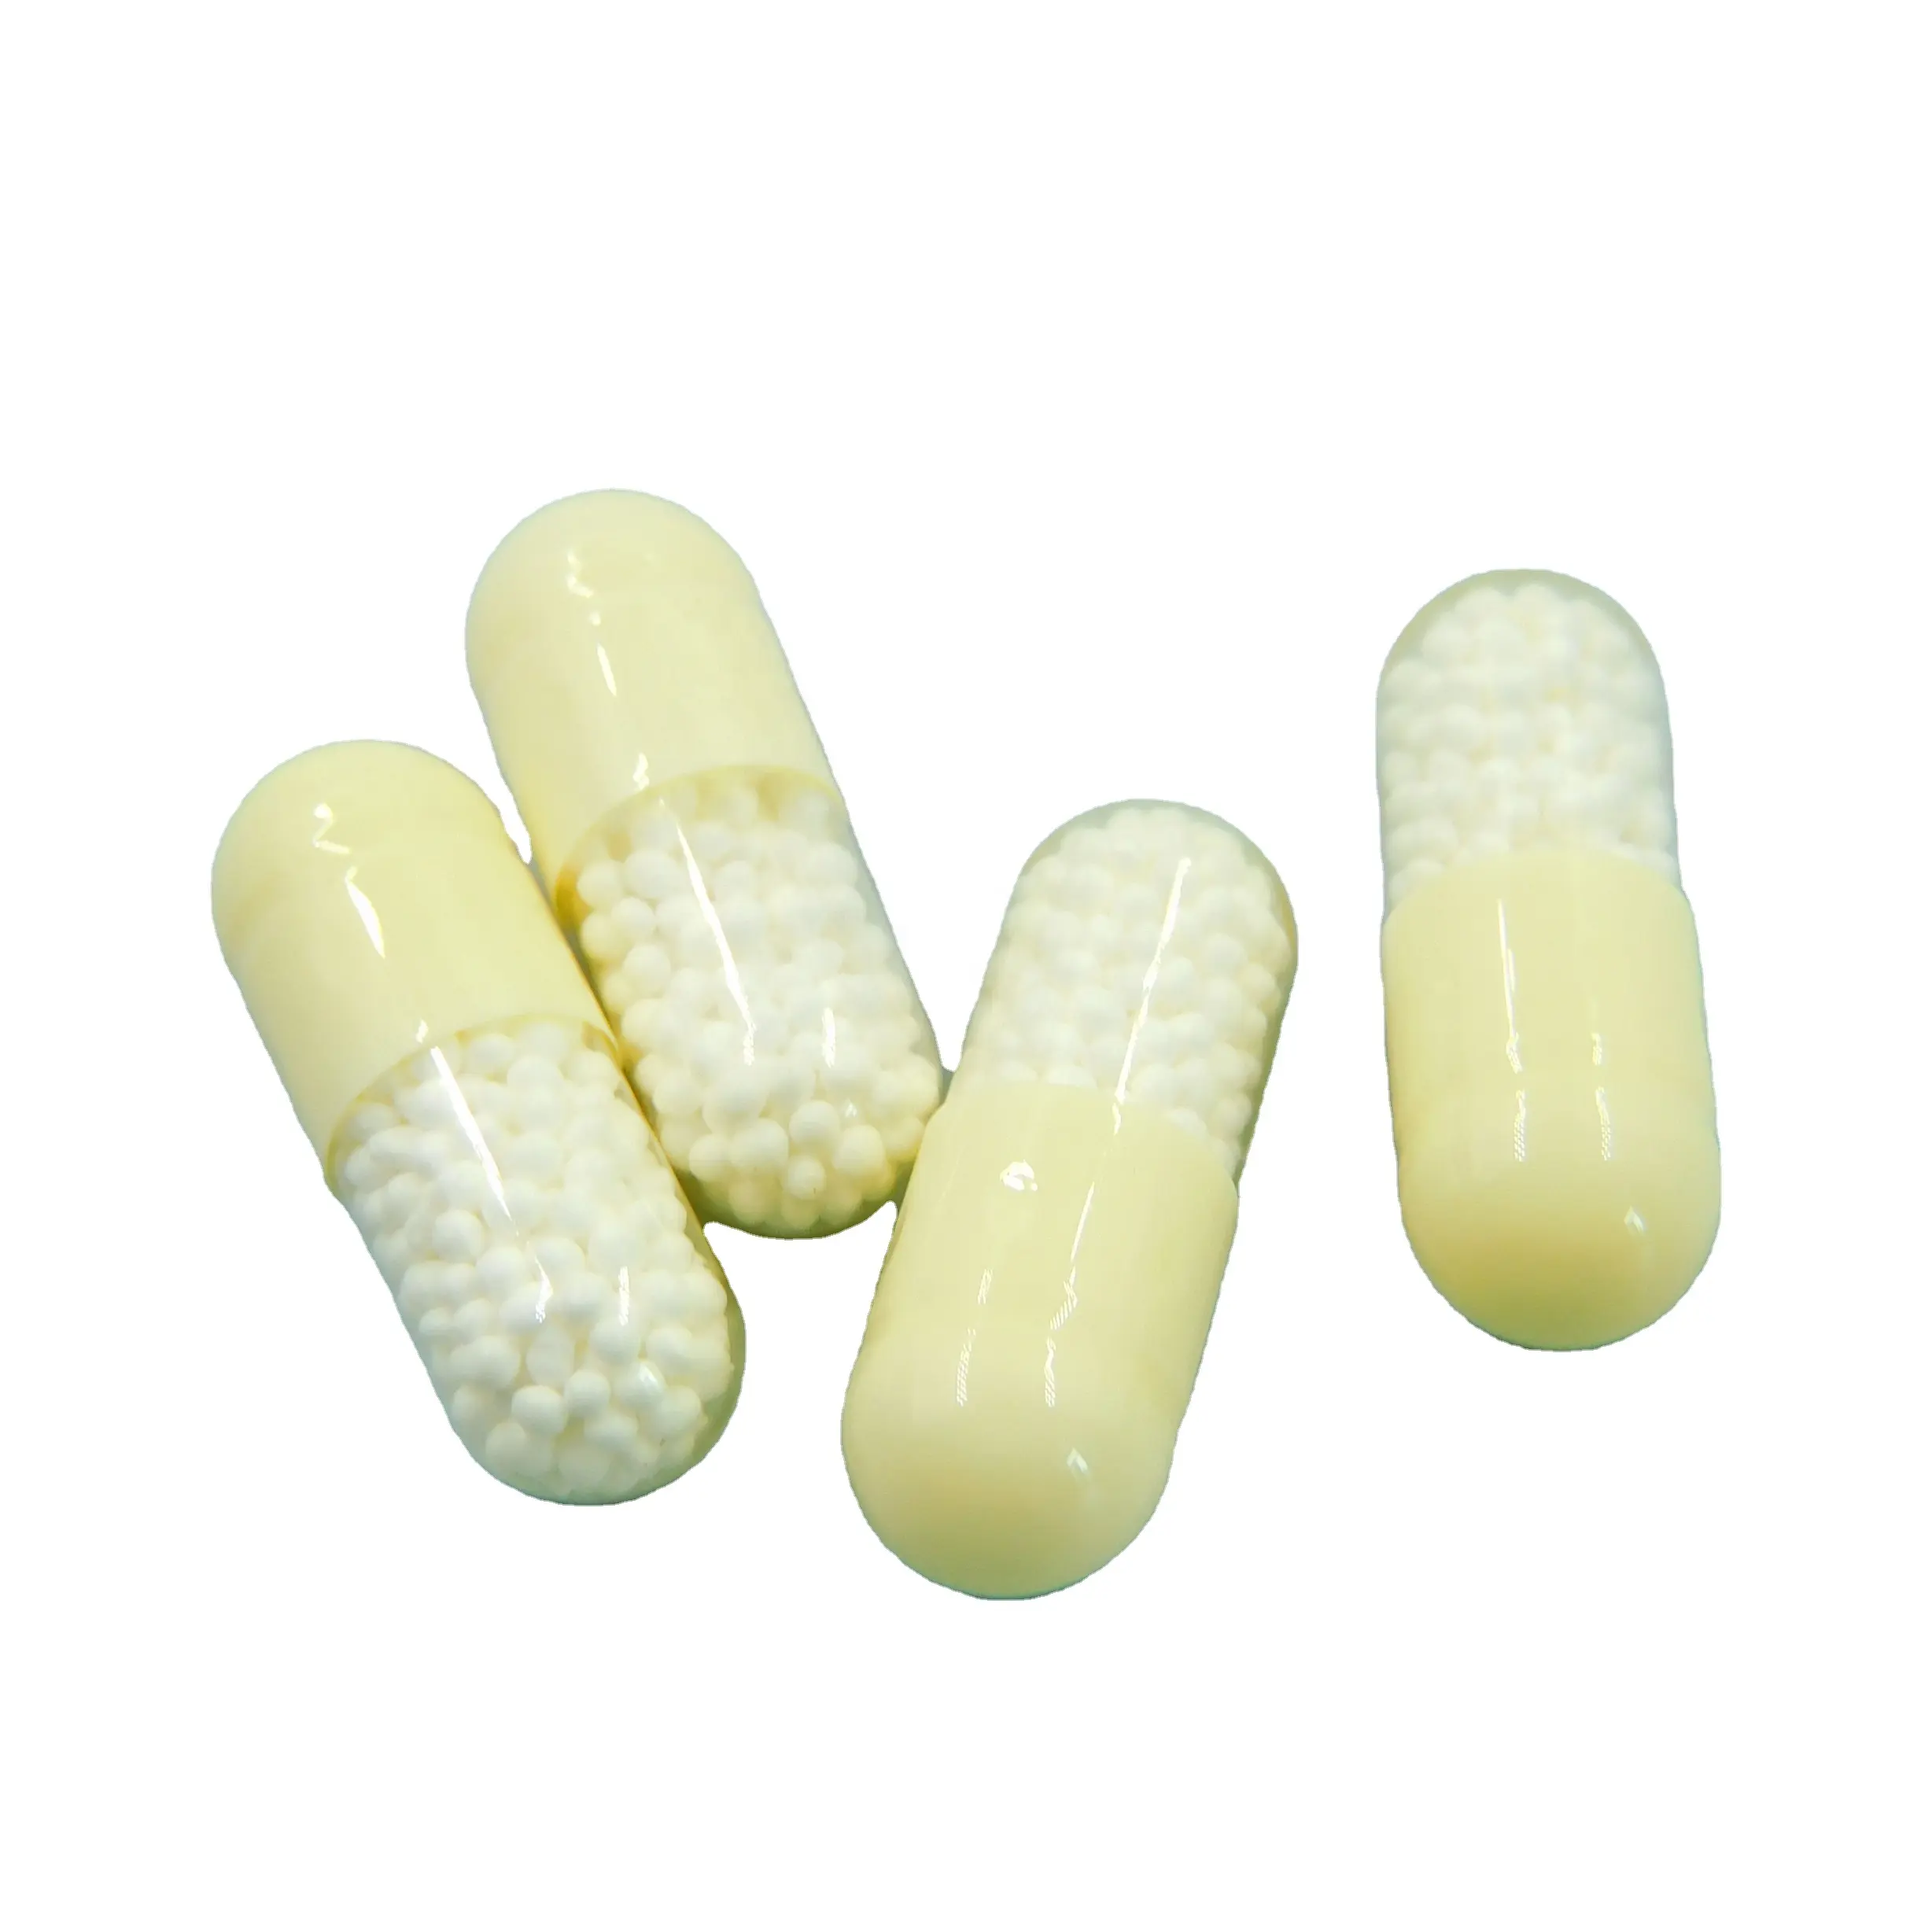 Capsules Beadlet à libération de vitamine C 500mg de supplément nutritionnel de haute qualité